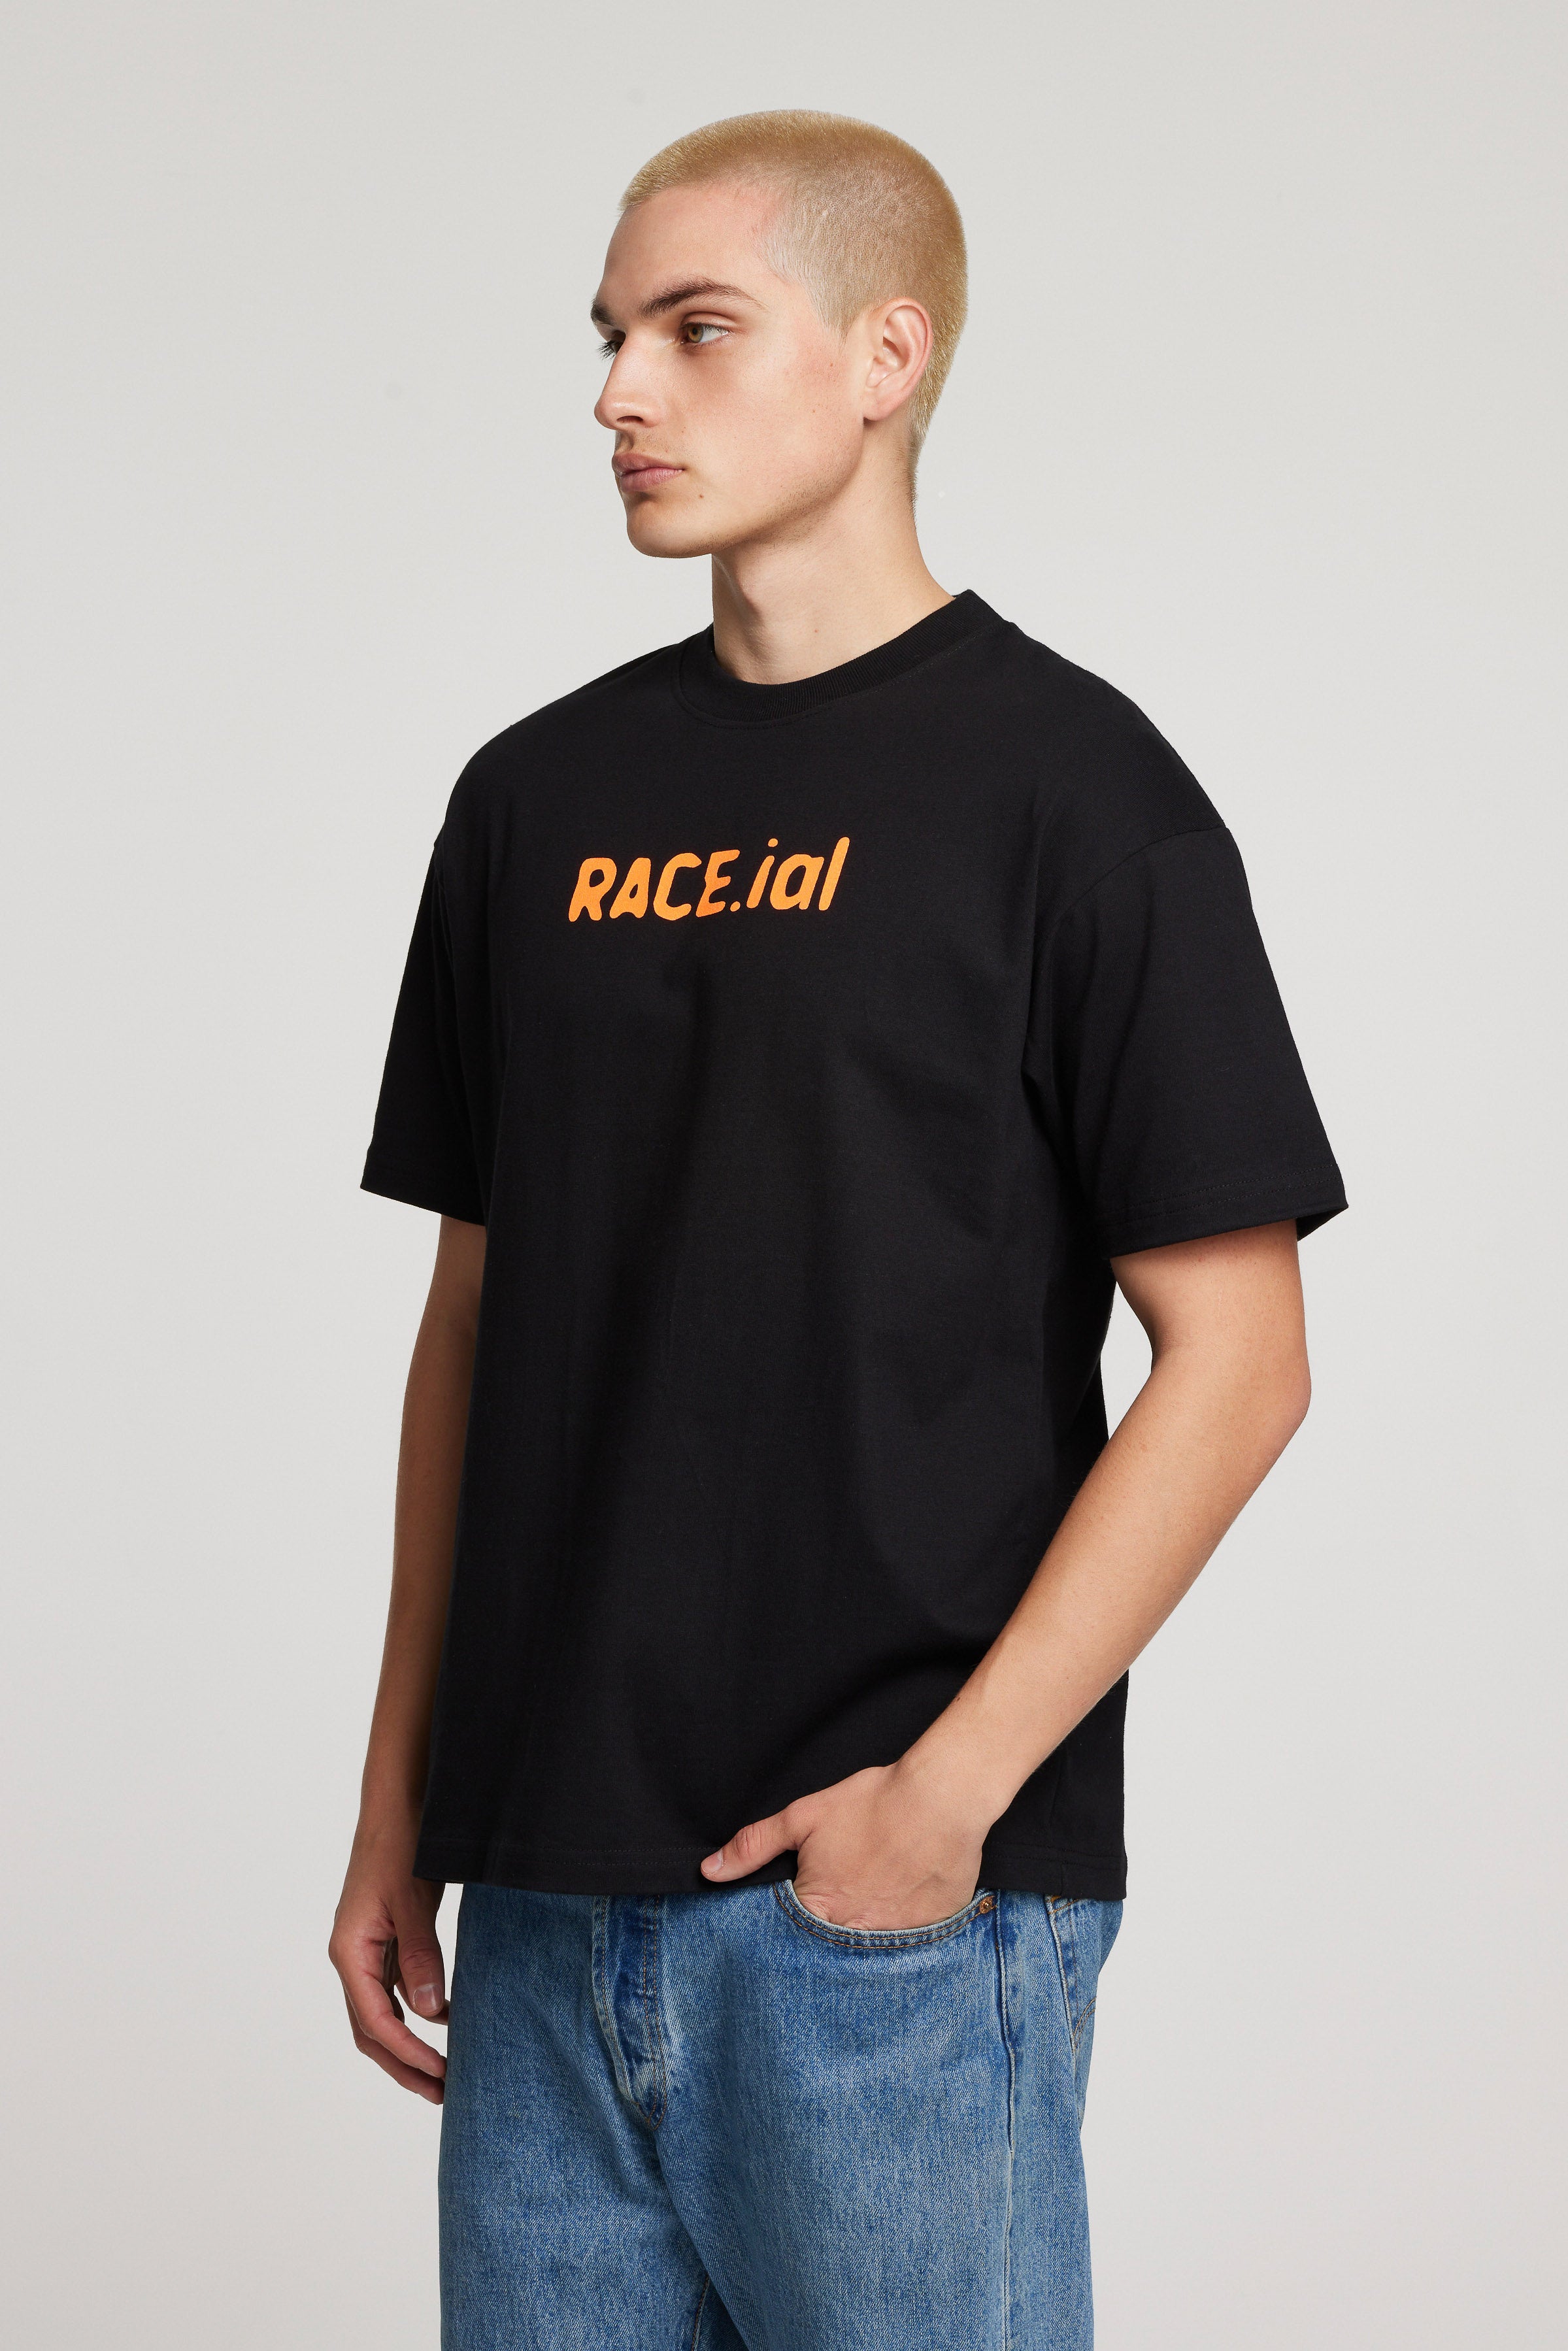 race.ial